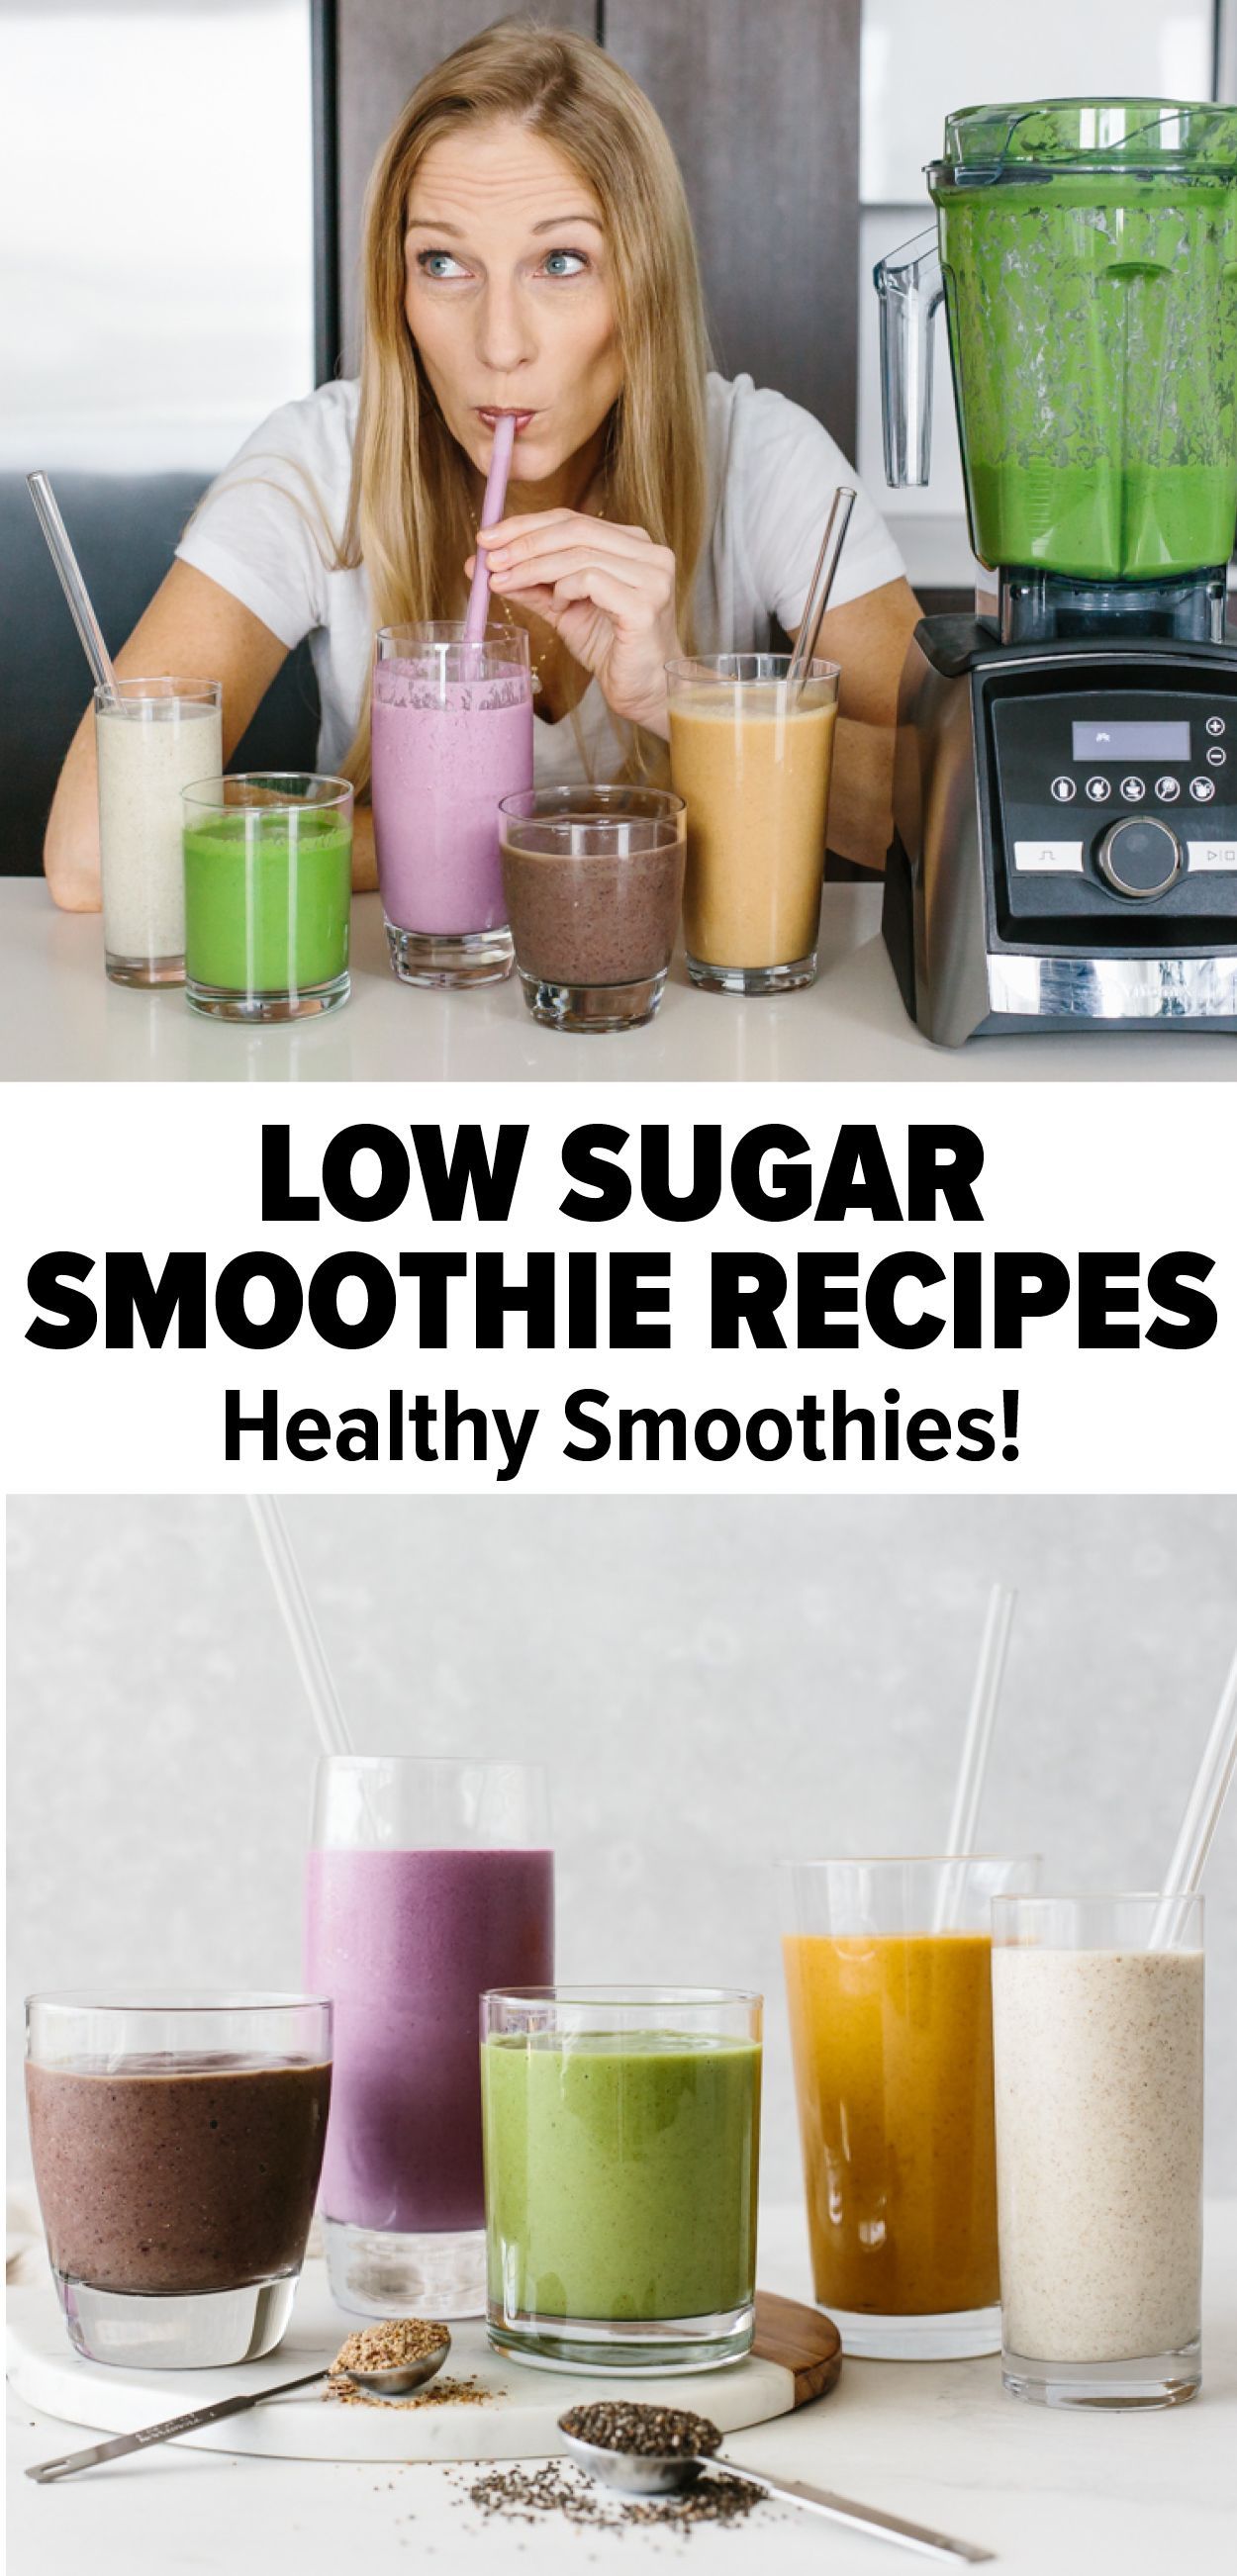 Low Sugar Smoothie Recipes - Healthy! -   17 healthy recipes Smoothies sugar ideas